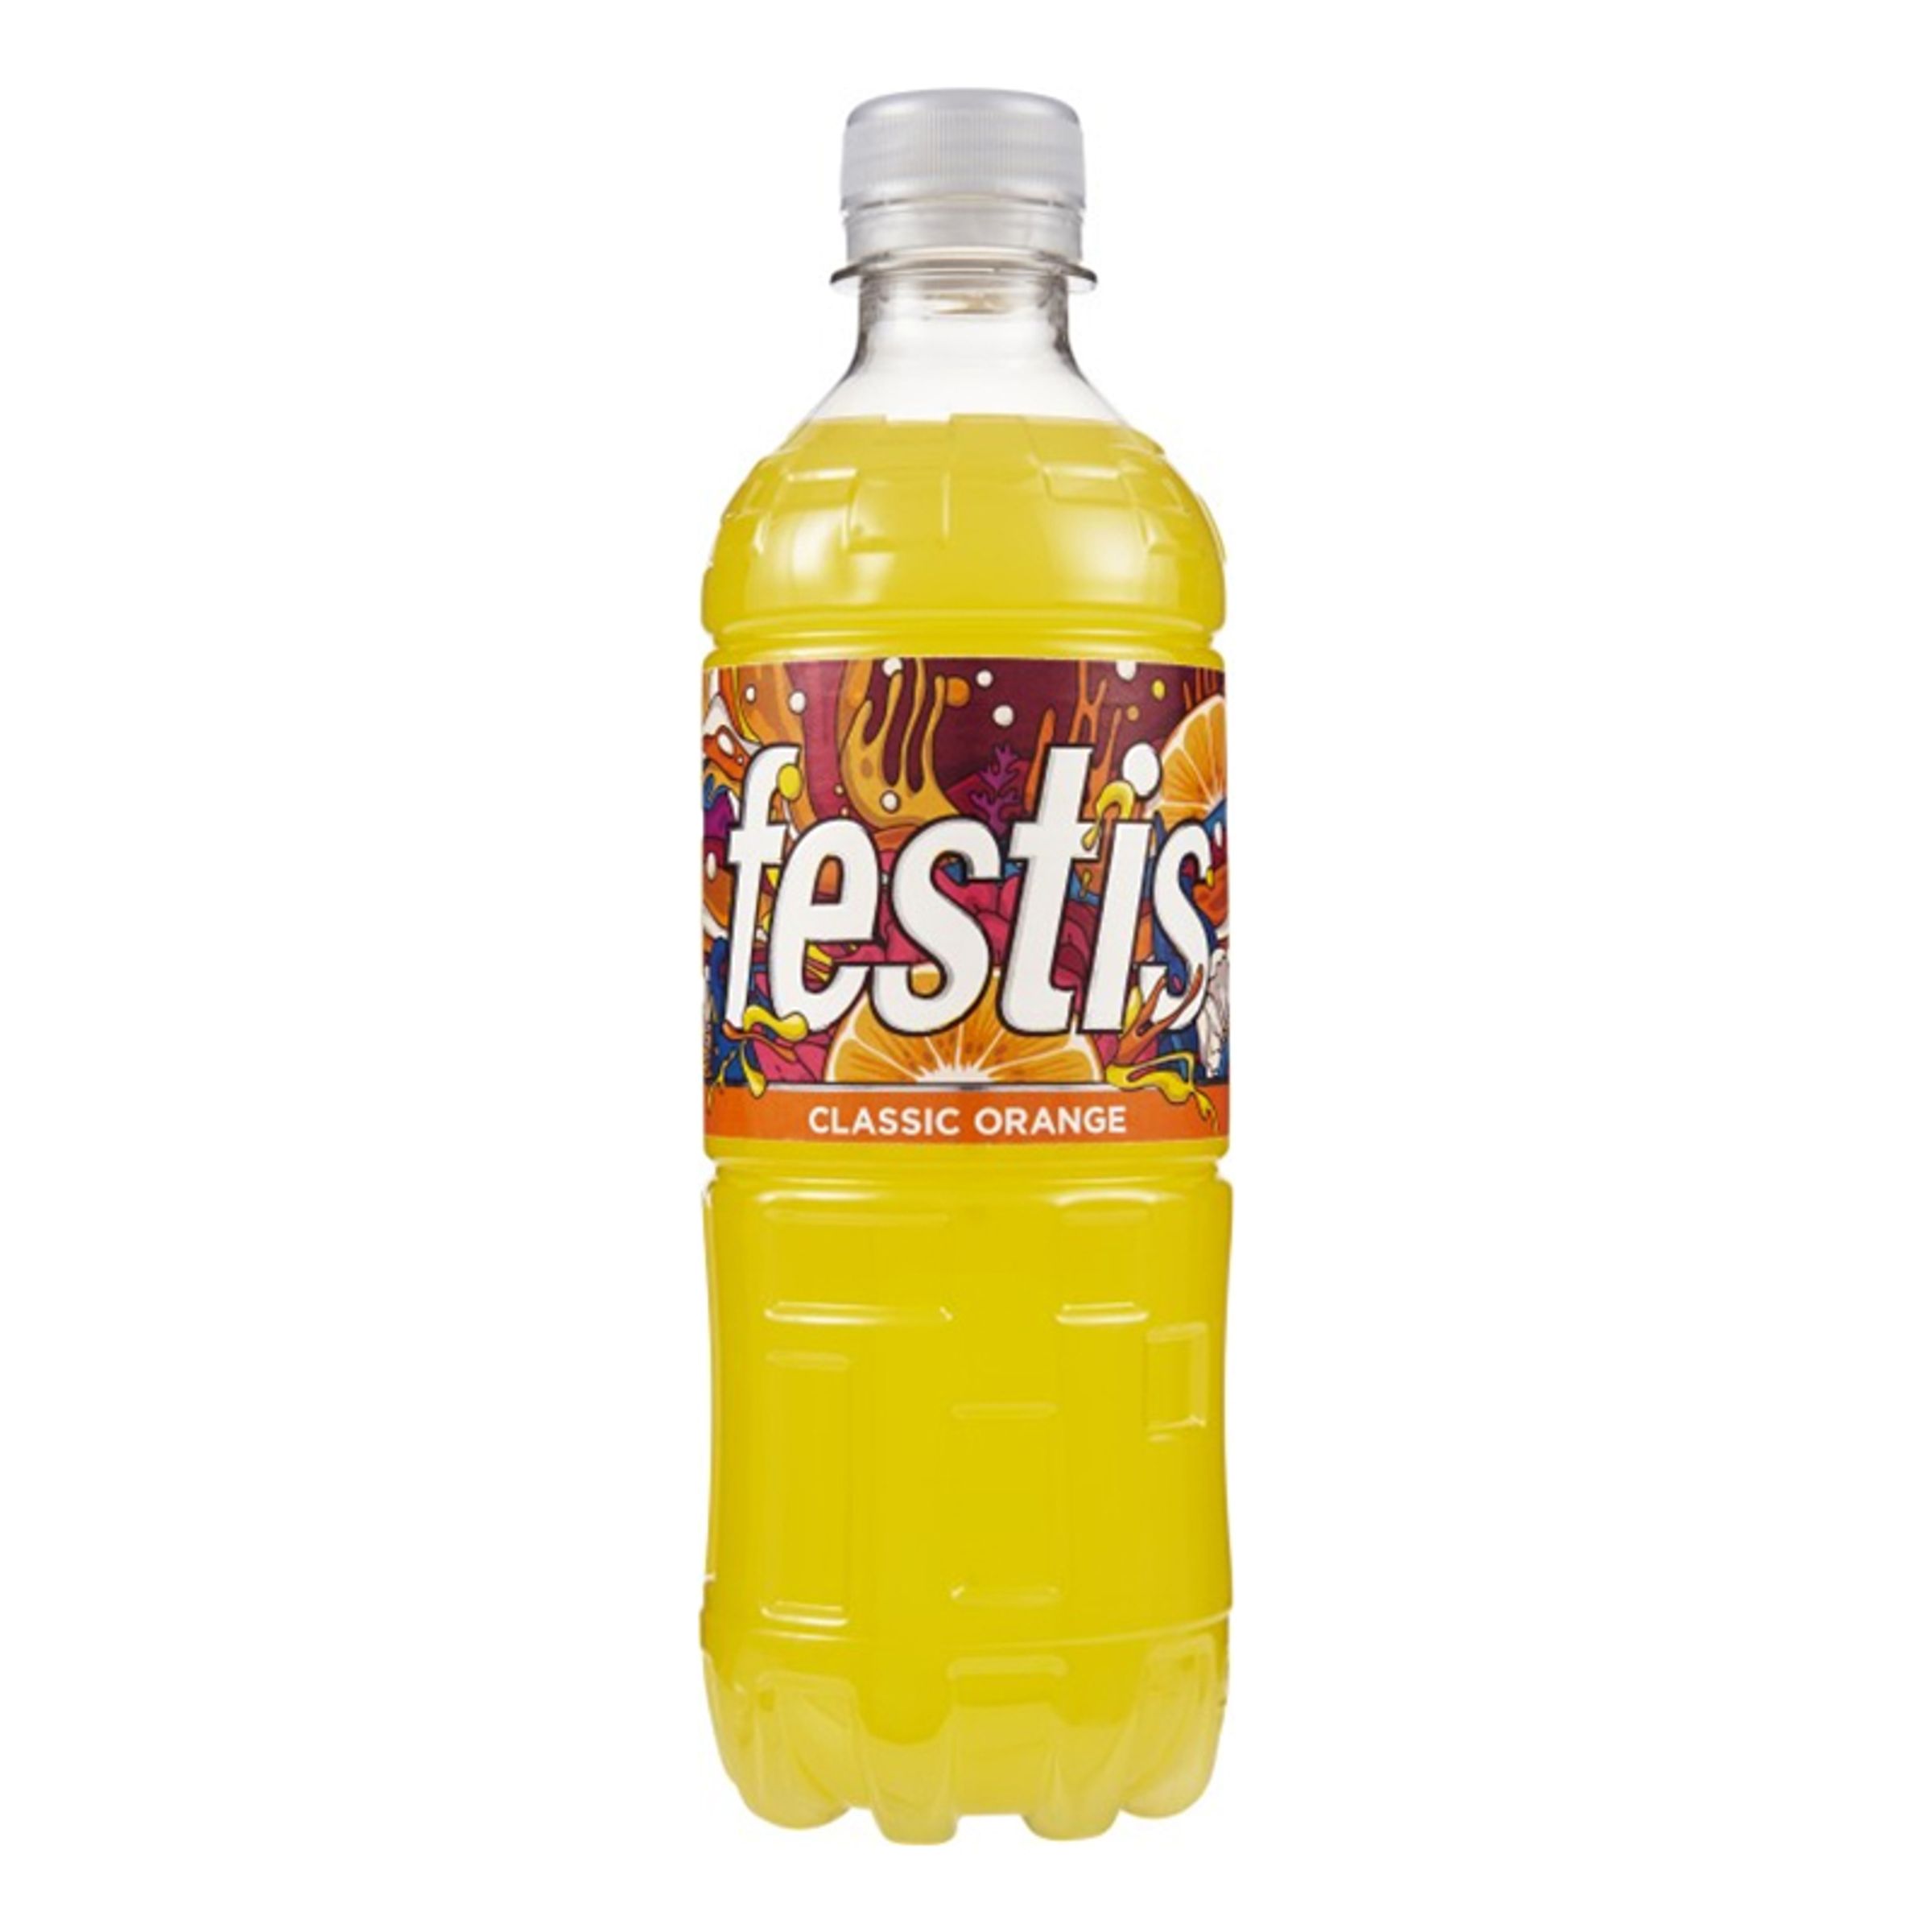 Festis Orange - 50 cl